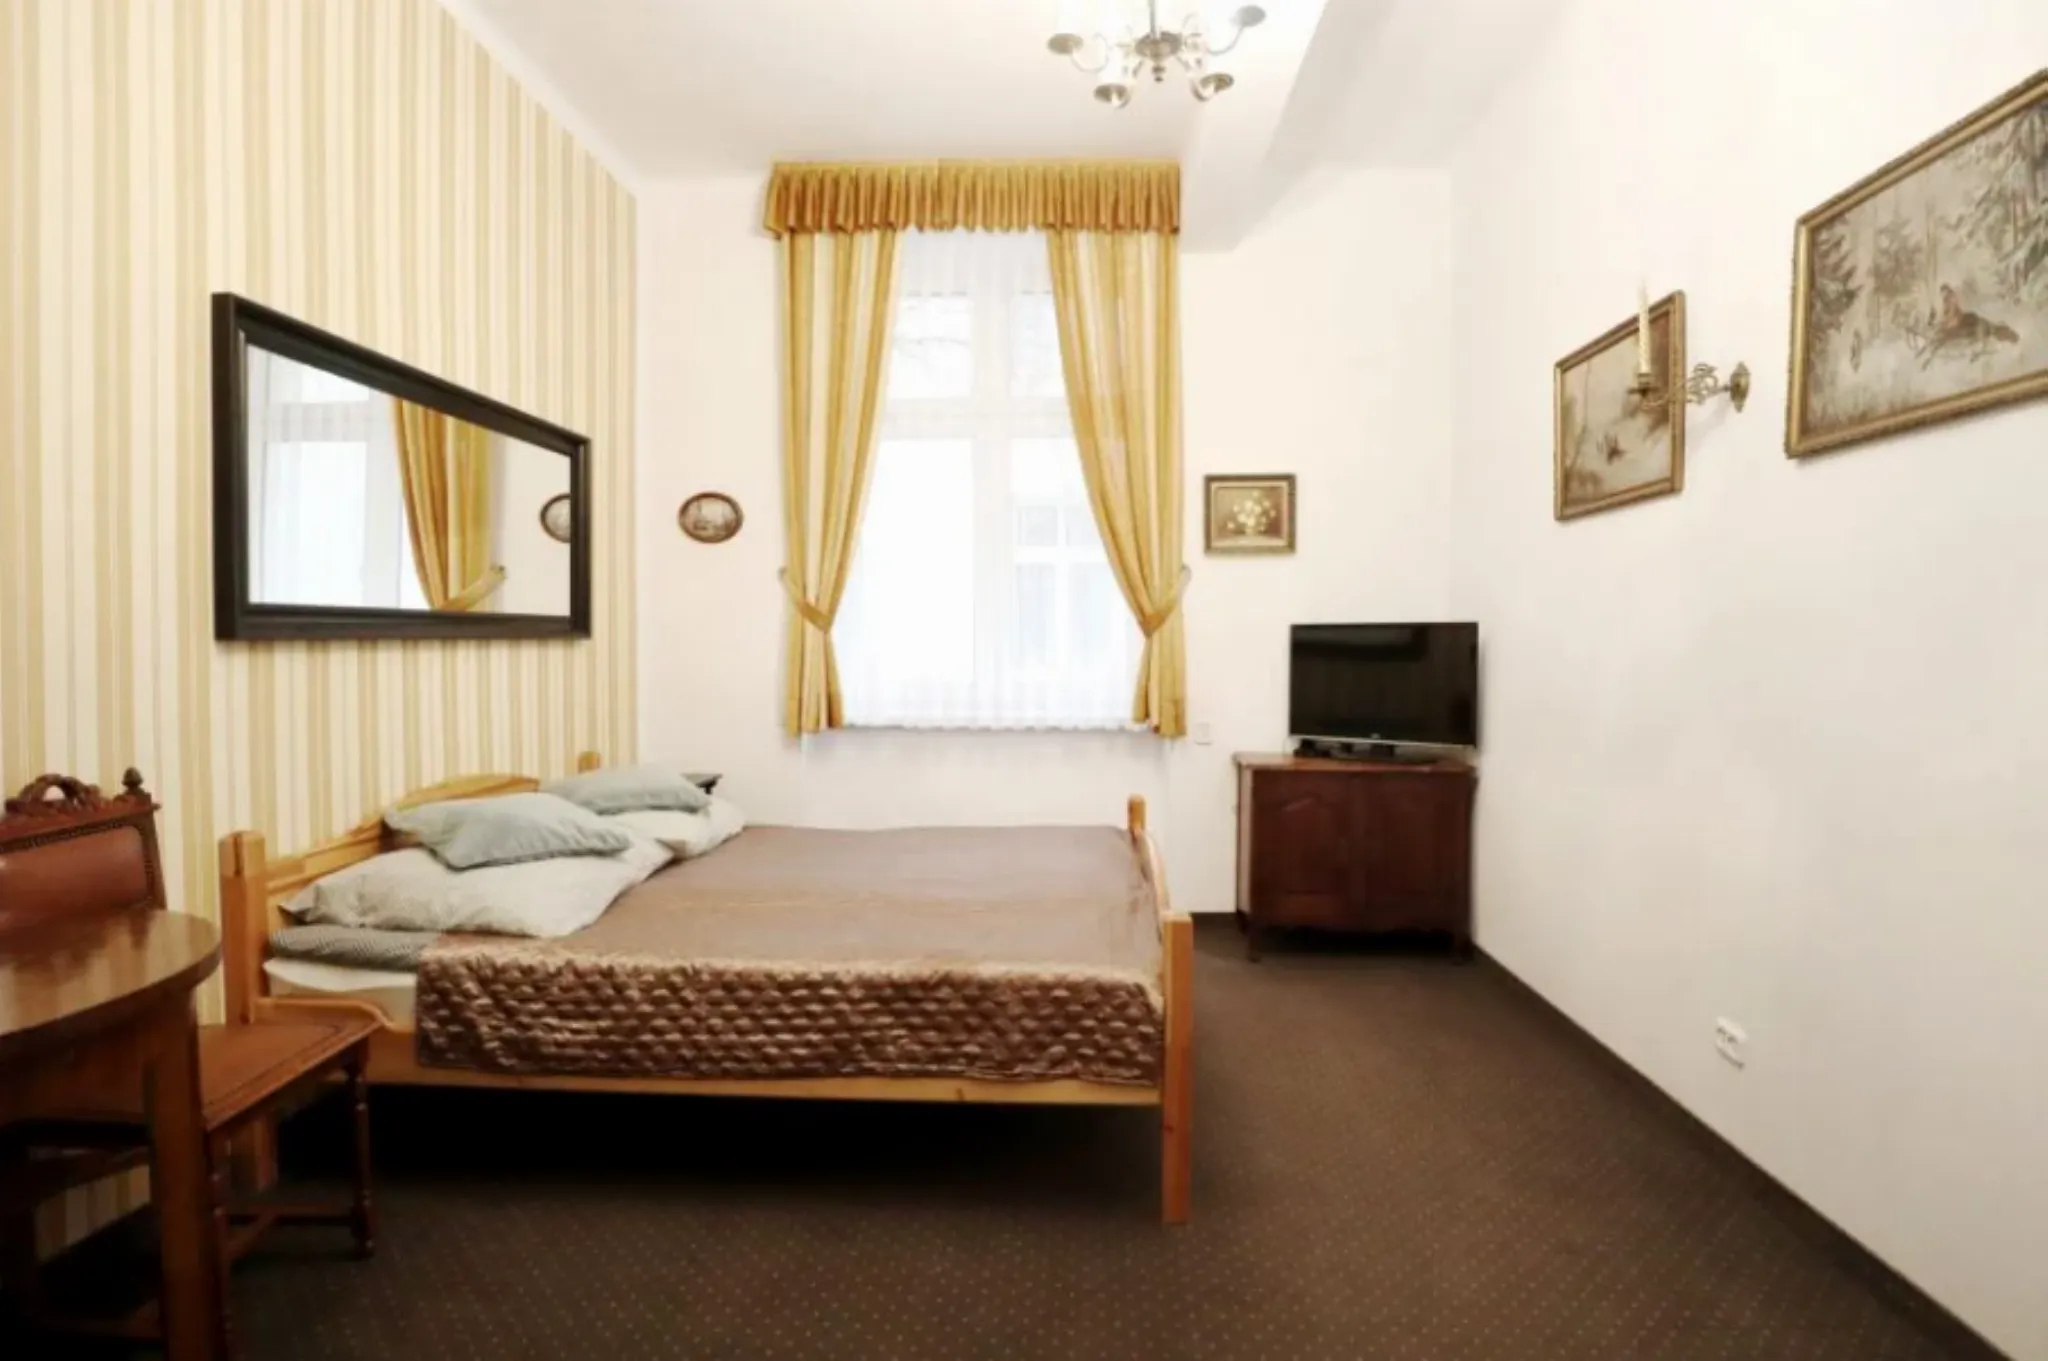 Kazimierz mieszkanie sprzedam, 39m2, 2 pokoje - Mieszkanie na sprzedaż Kraków